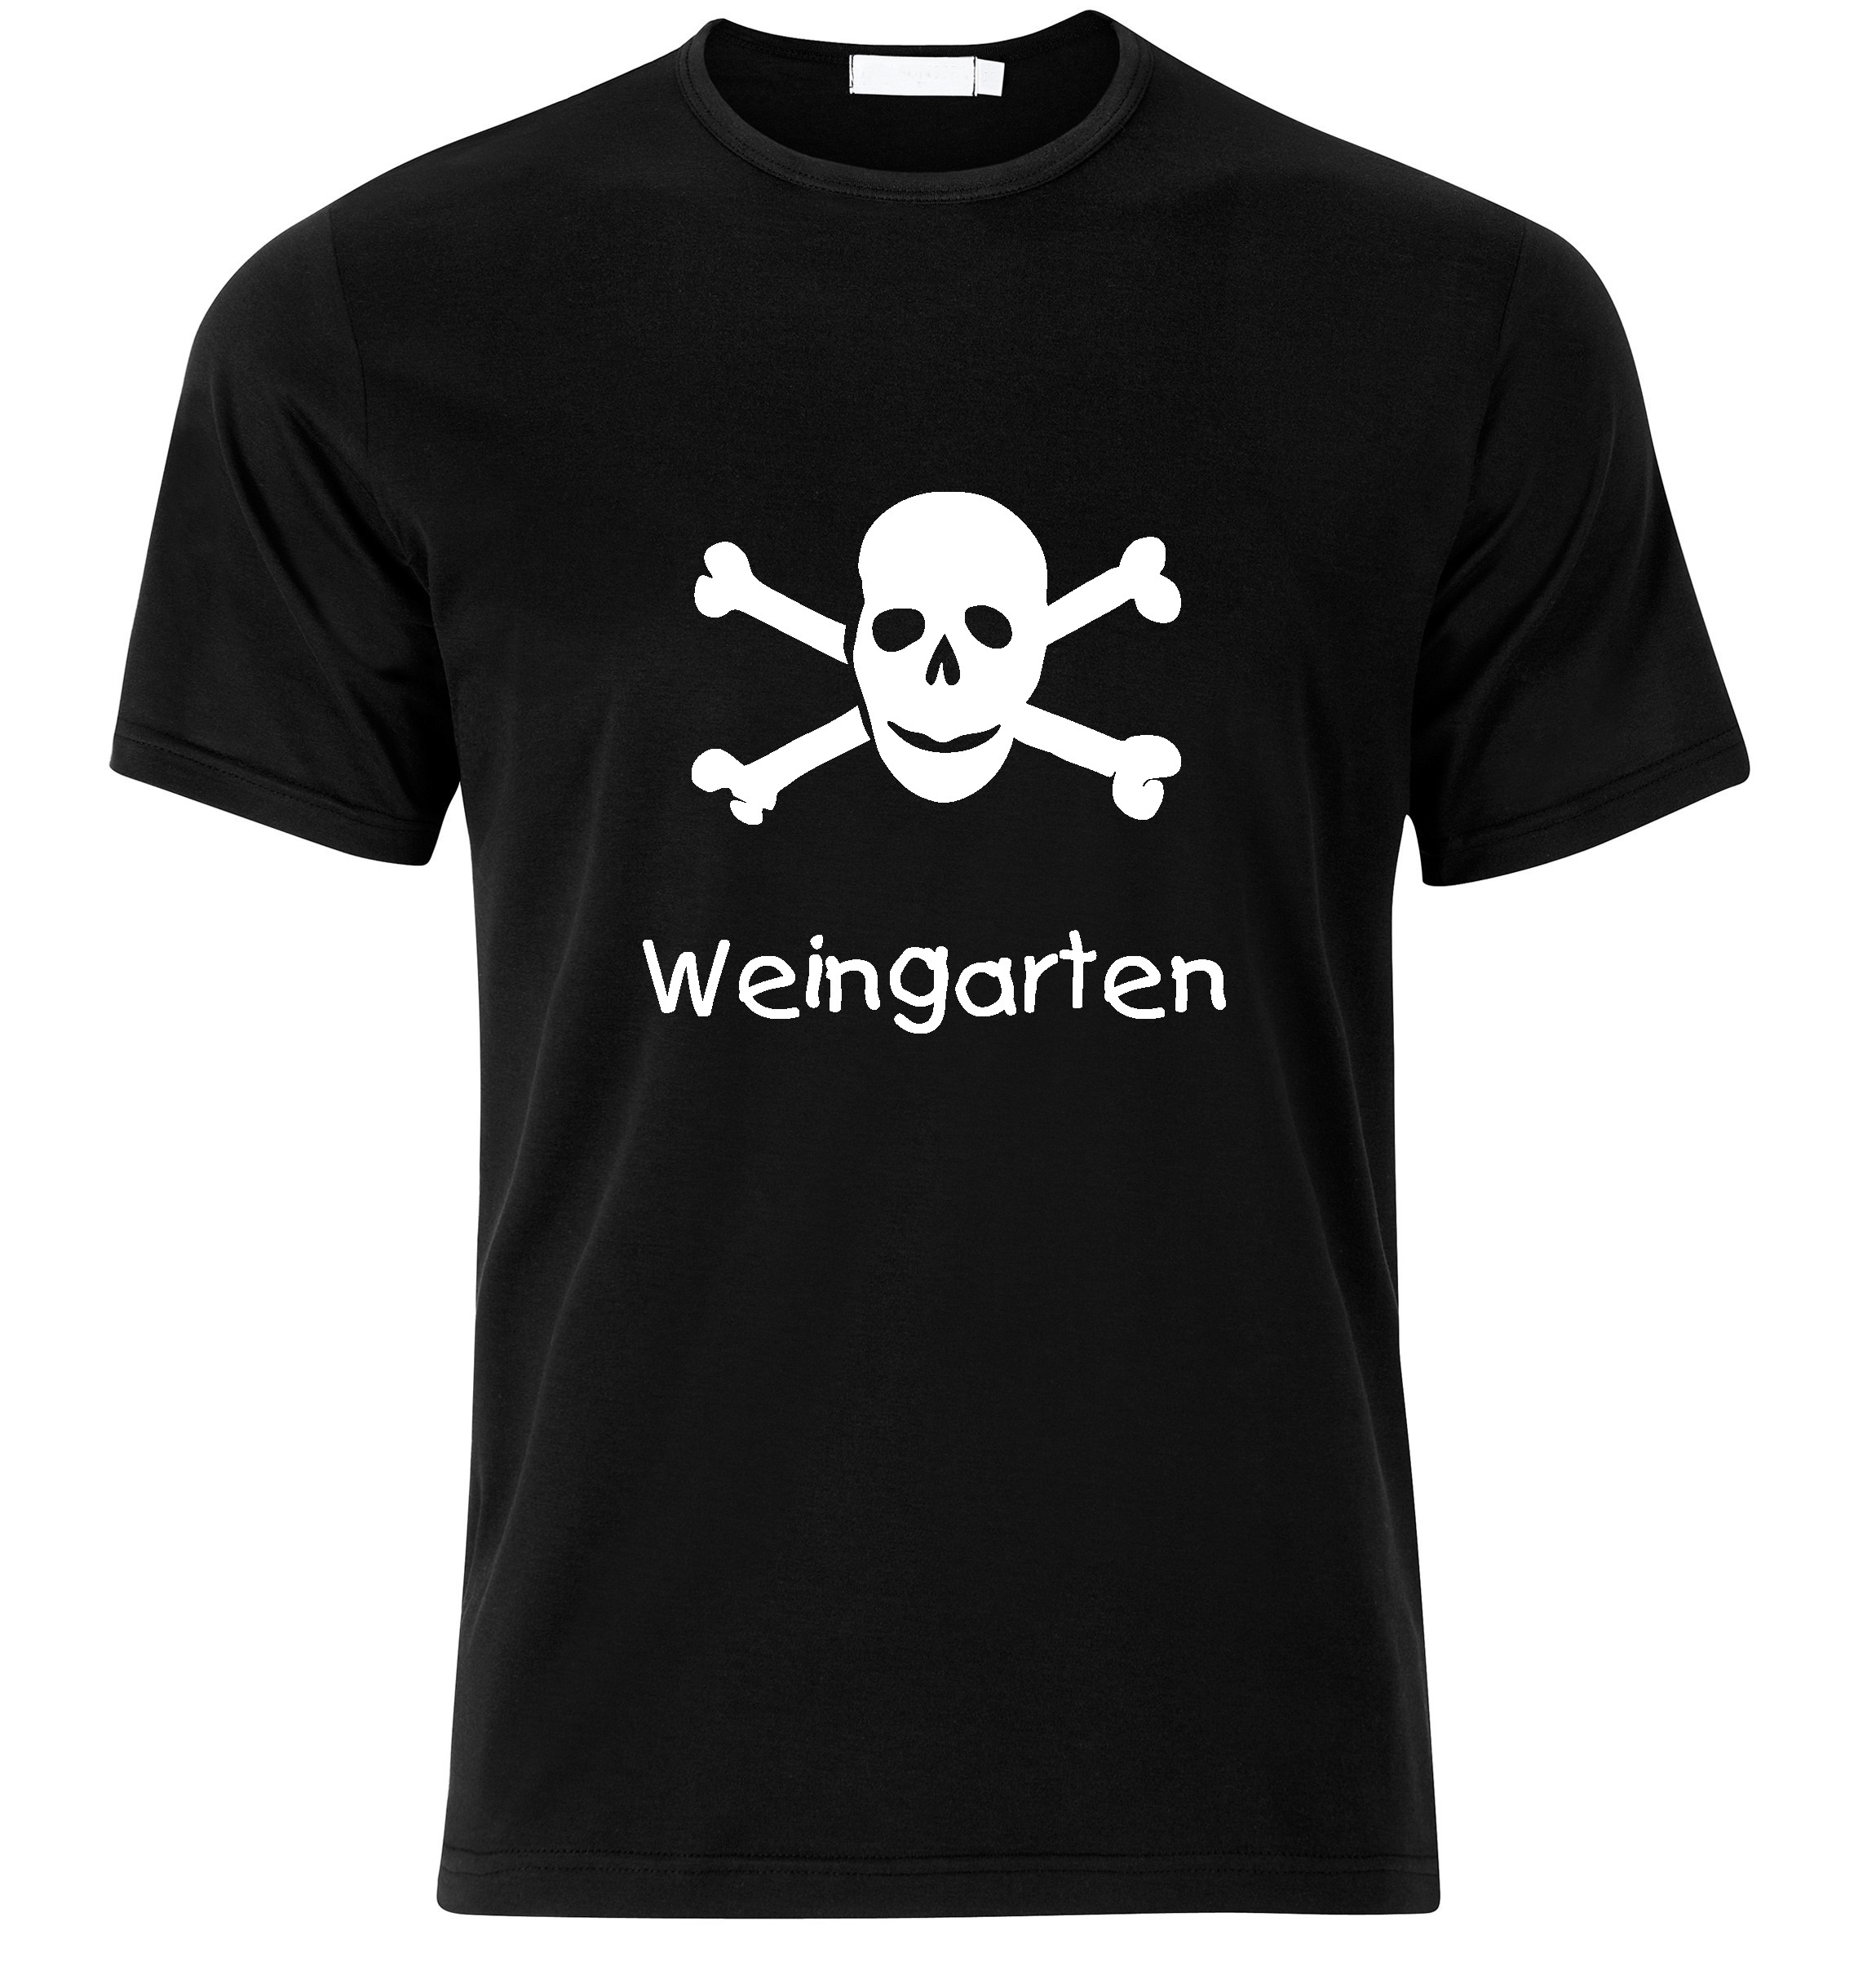 T-Shirt Weingarten Jolly Roger, Totenkopf